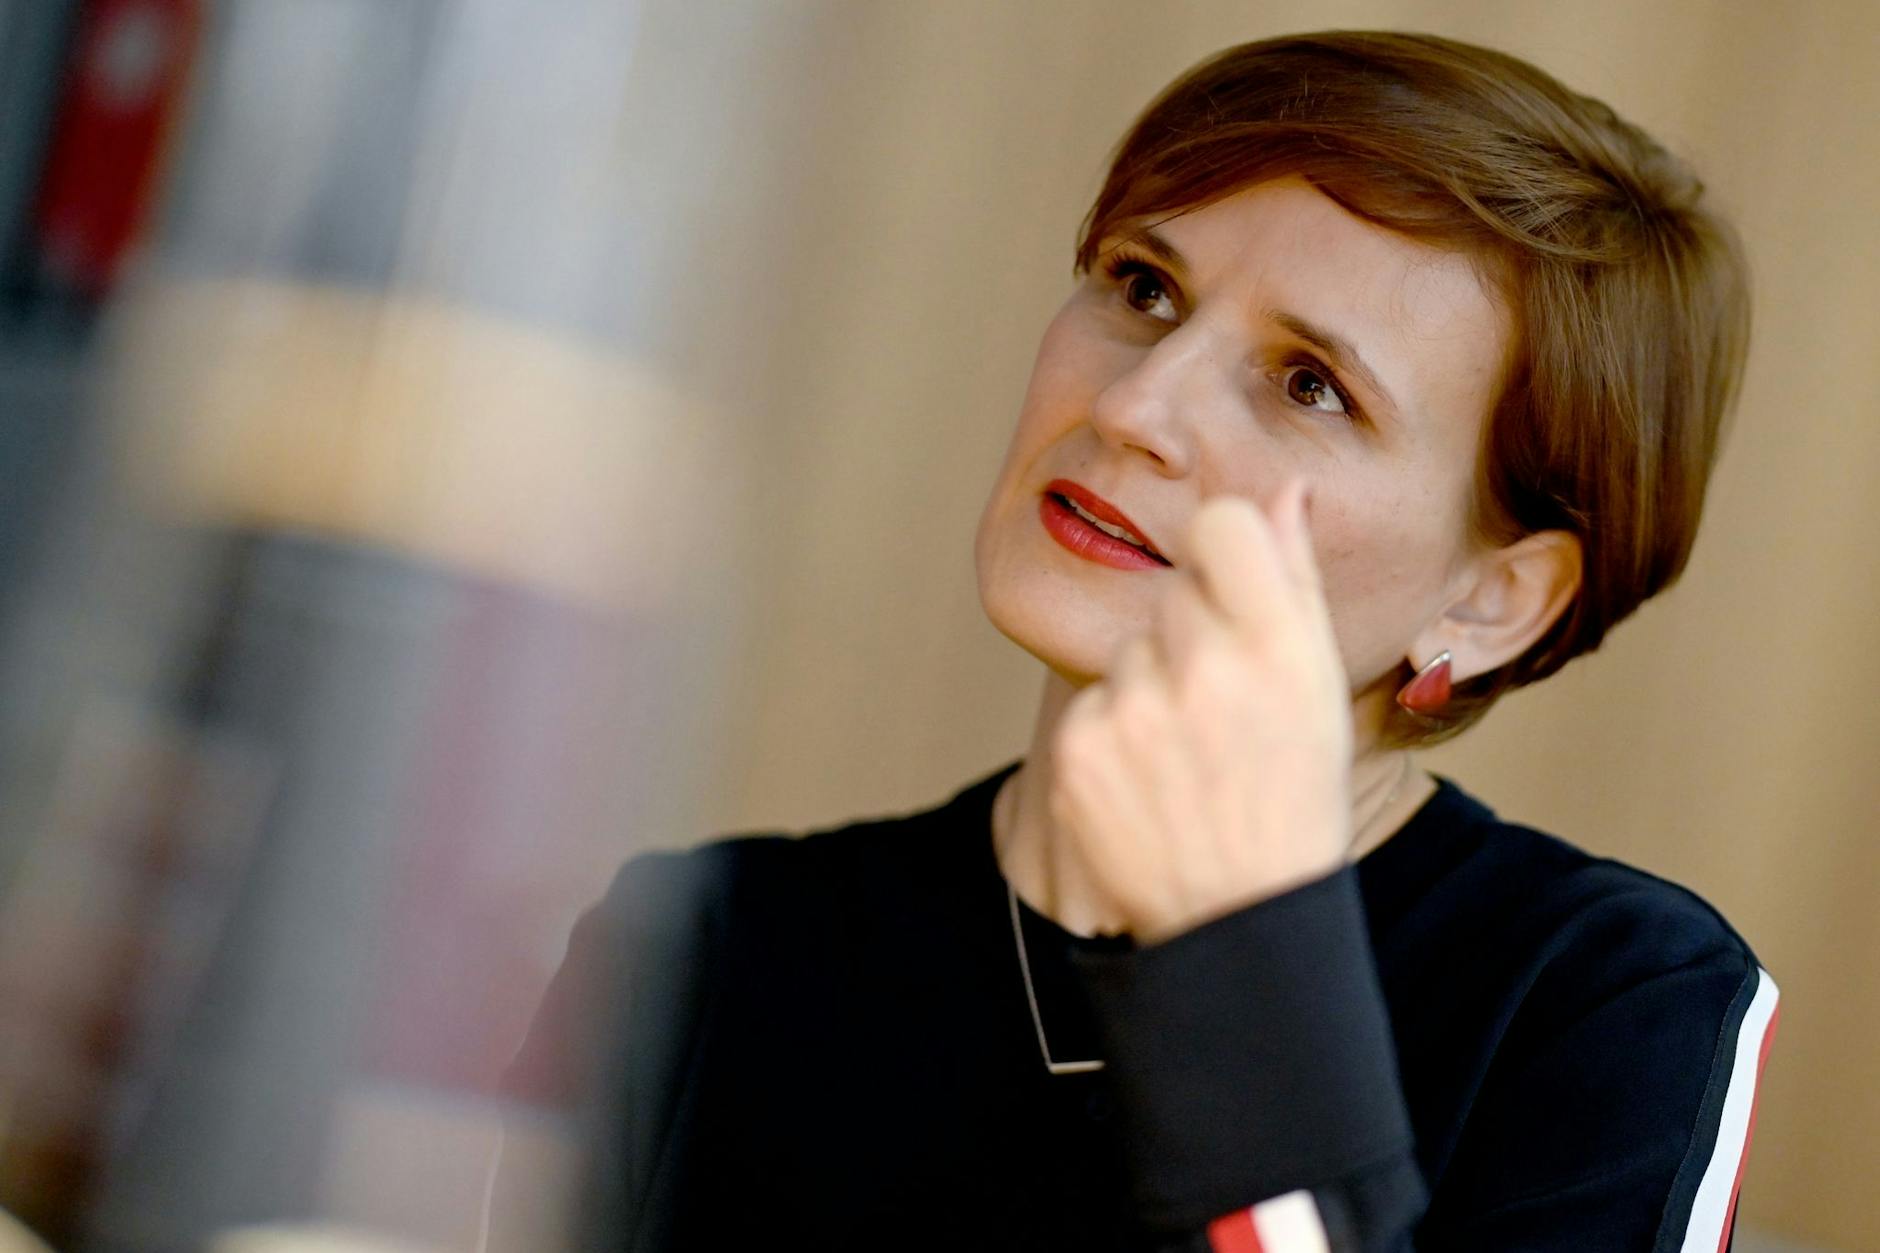 Katja Kipping, Berliner Senatorin für Integration, Arbeit und Soziales, will in der Hauptstadt mehr Platz für Geflüchtete schaffen.